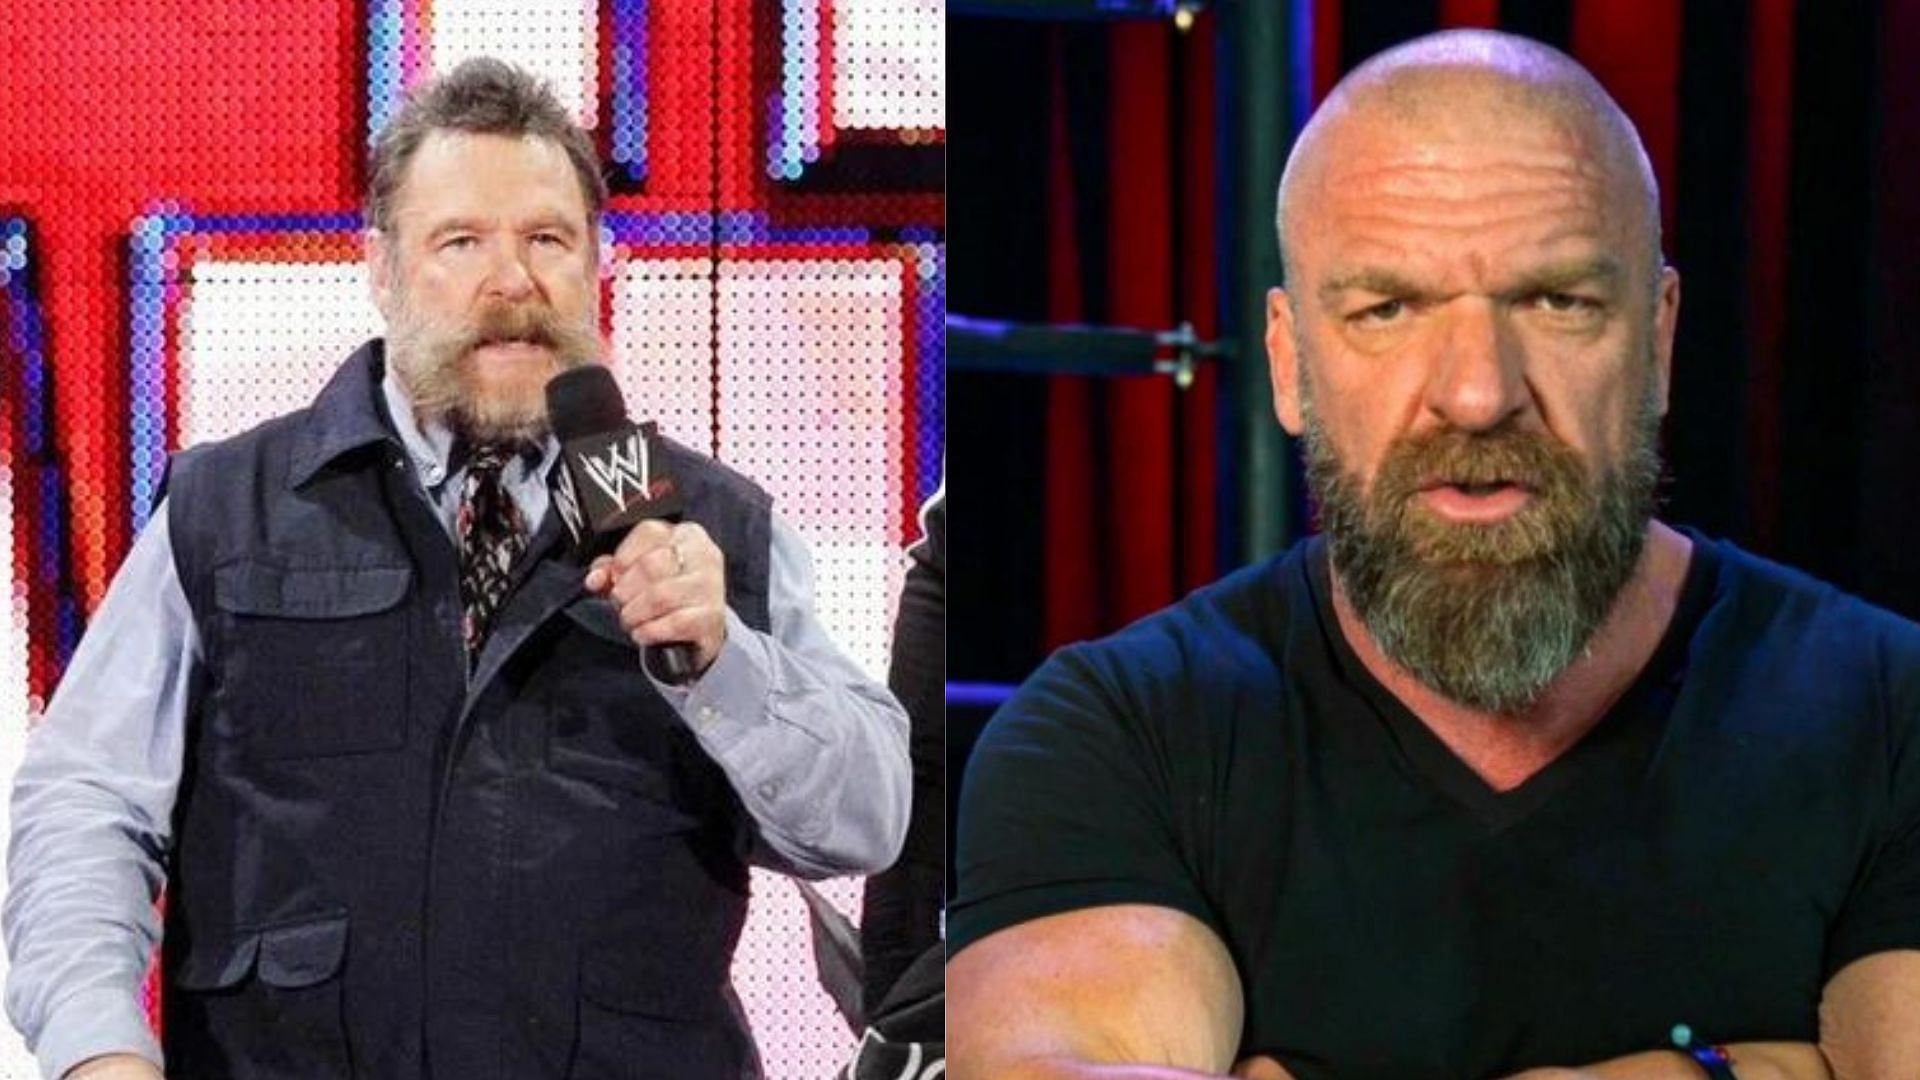 De Nederlandse Montel denkt dat Triple H de voormalige AEW-ster zou kunnen ondertekenen vanwege de nalatenschap van zijn overleden vader in WWE